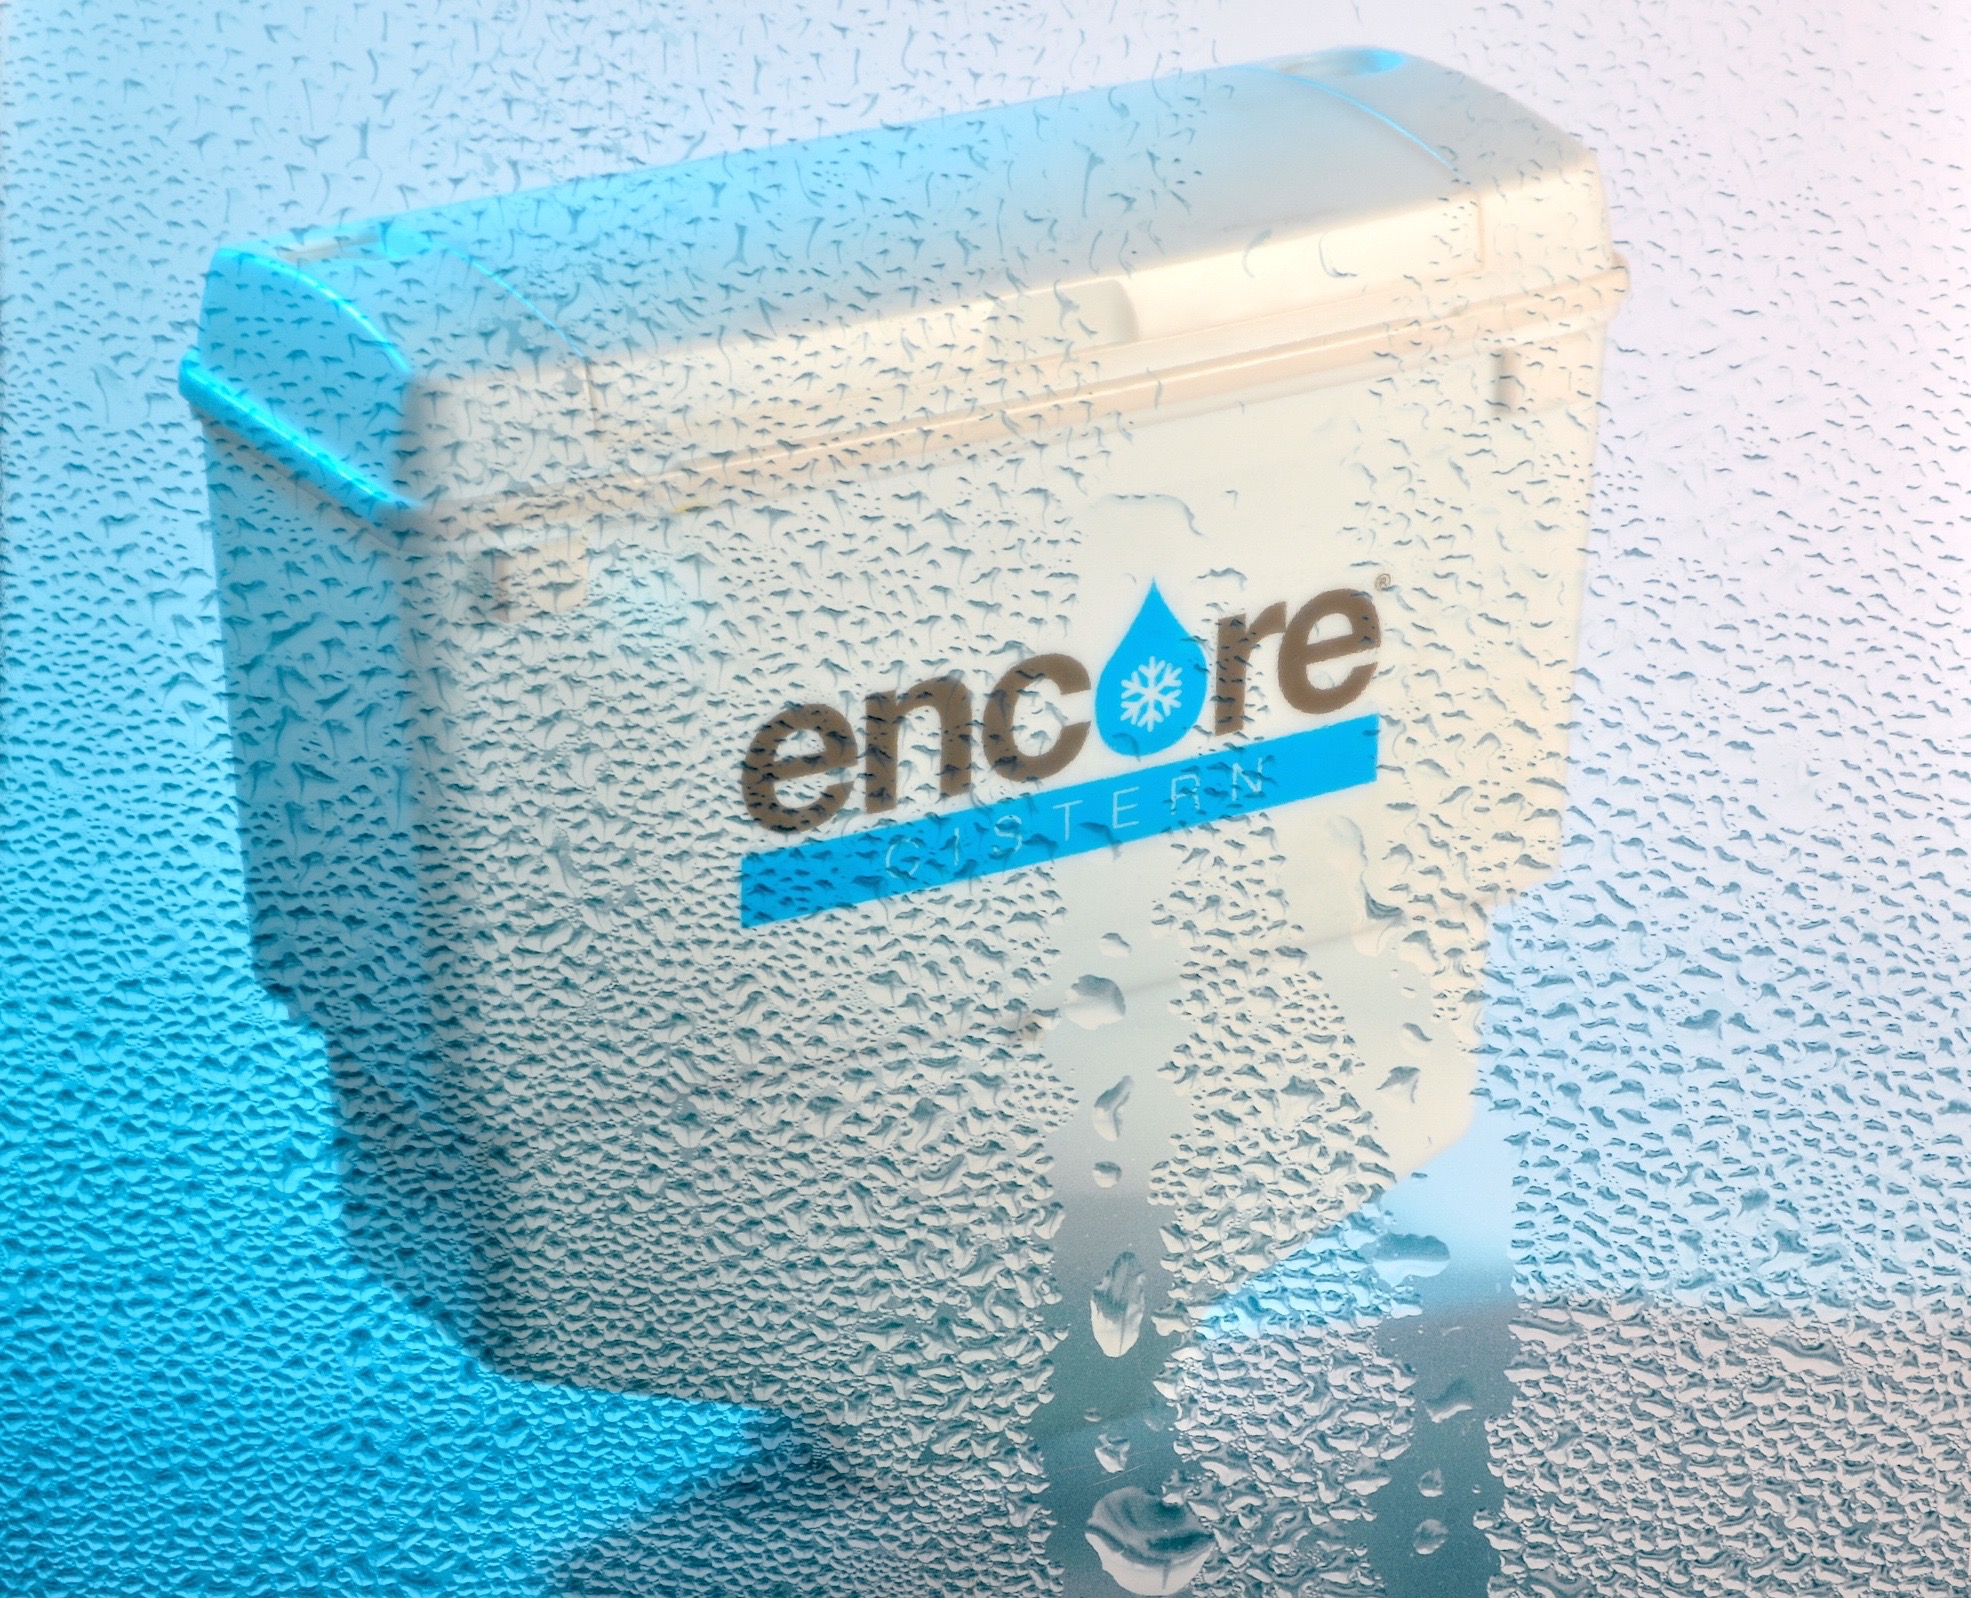 So sparen Hotels viel Wasser: Neuer Spülkasten "Encore" nutzt Kondenswasser aus Klimaanlagen